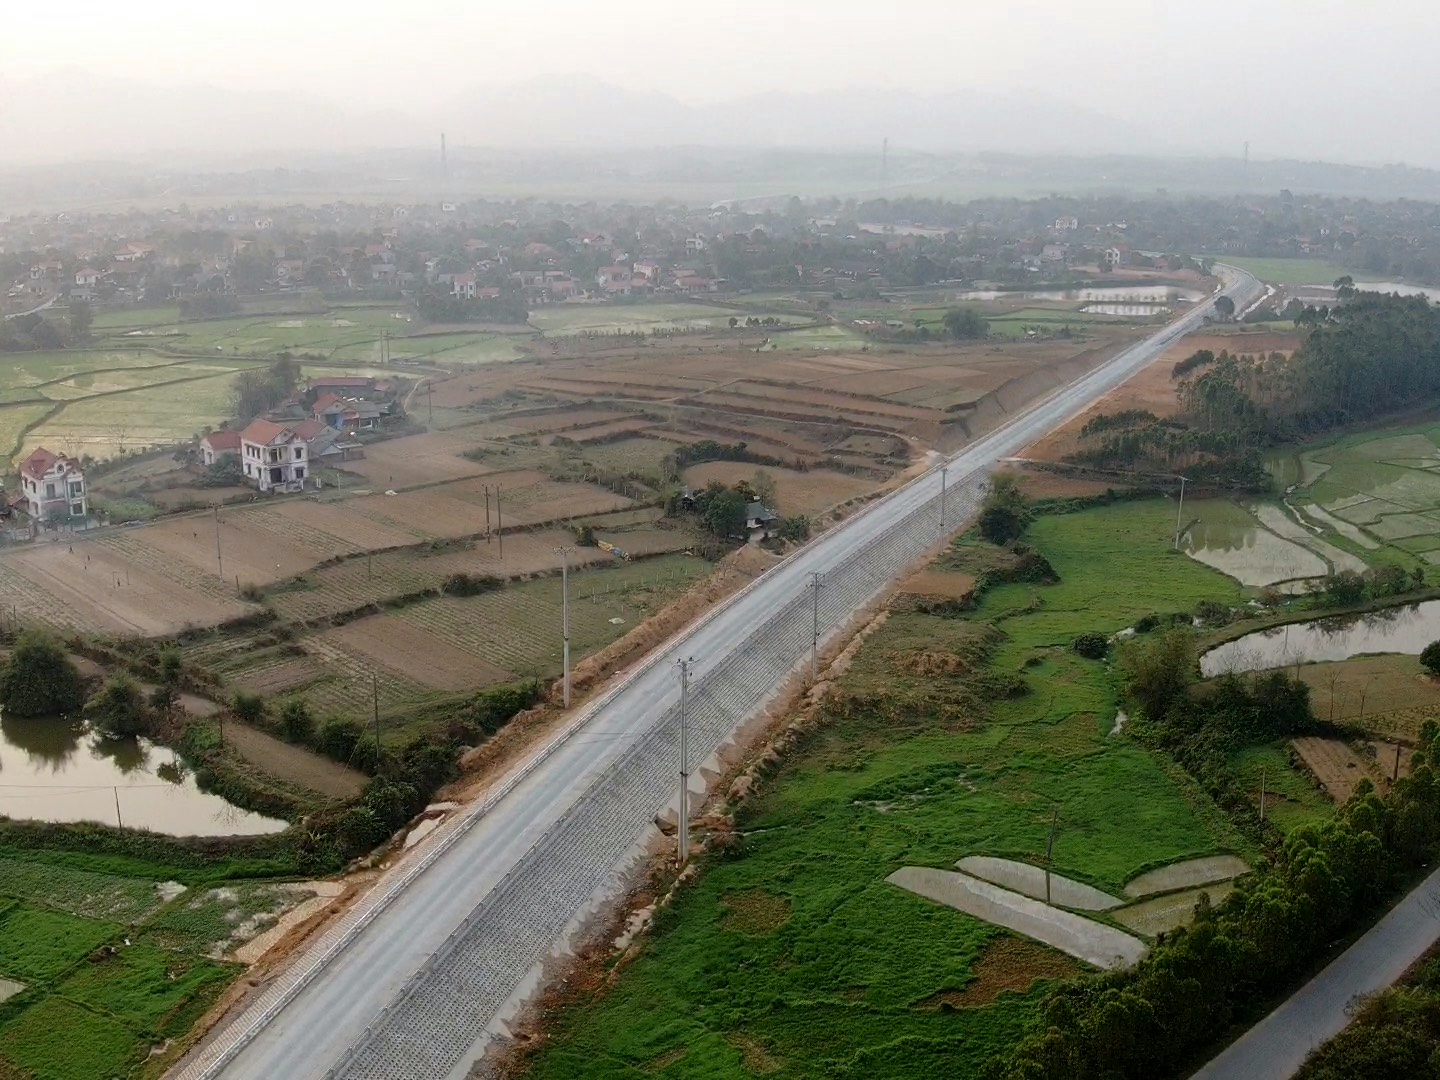 Tuyến đường giao thông liên vùng kết nối 2 tỉnh Phú Thọ - Yên Bái với tổng chiều dài gần 54km